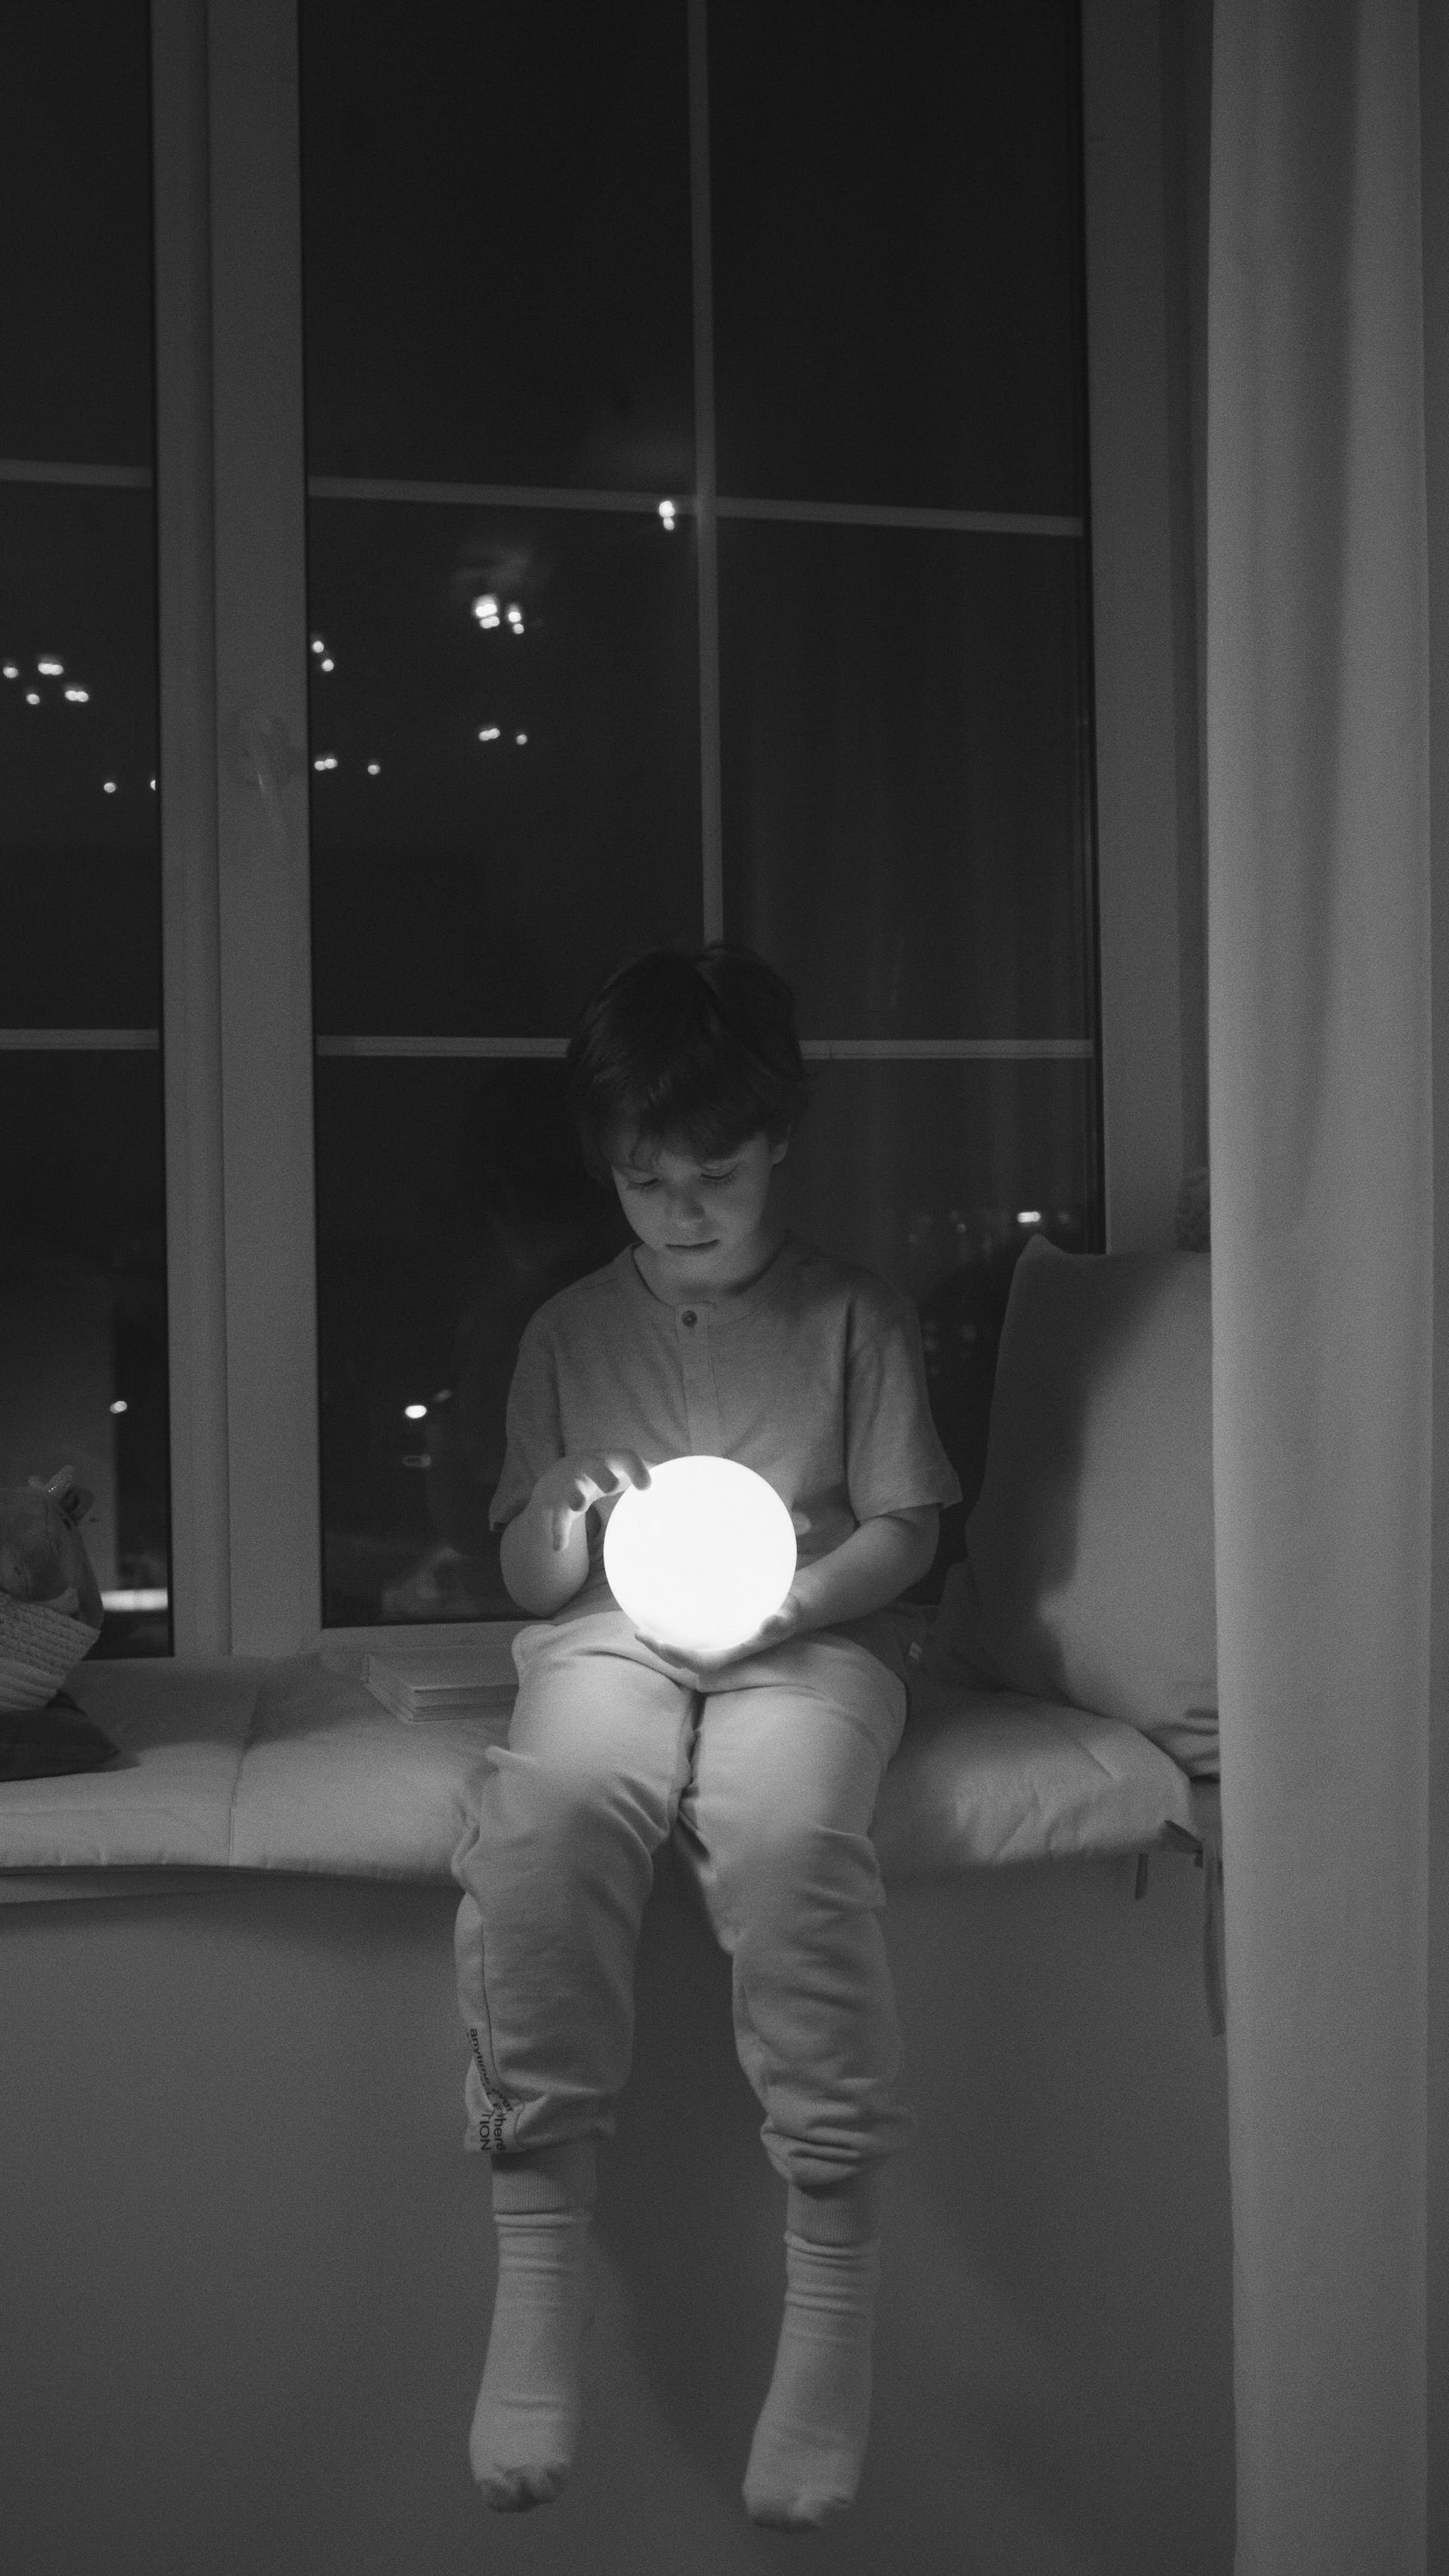 Un niño sujetando una bola de luz | Fuente: Pexels